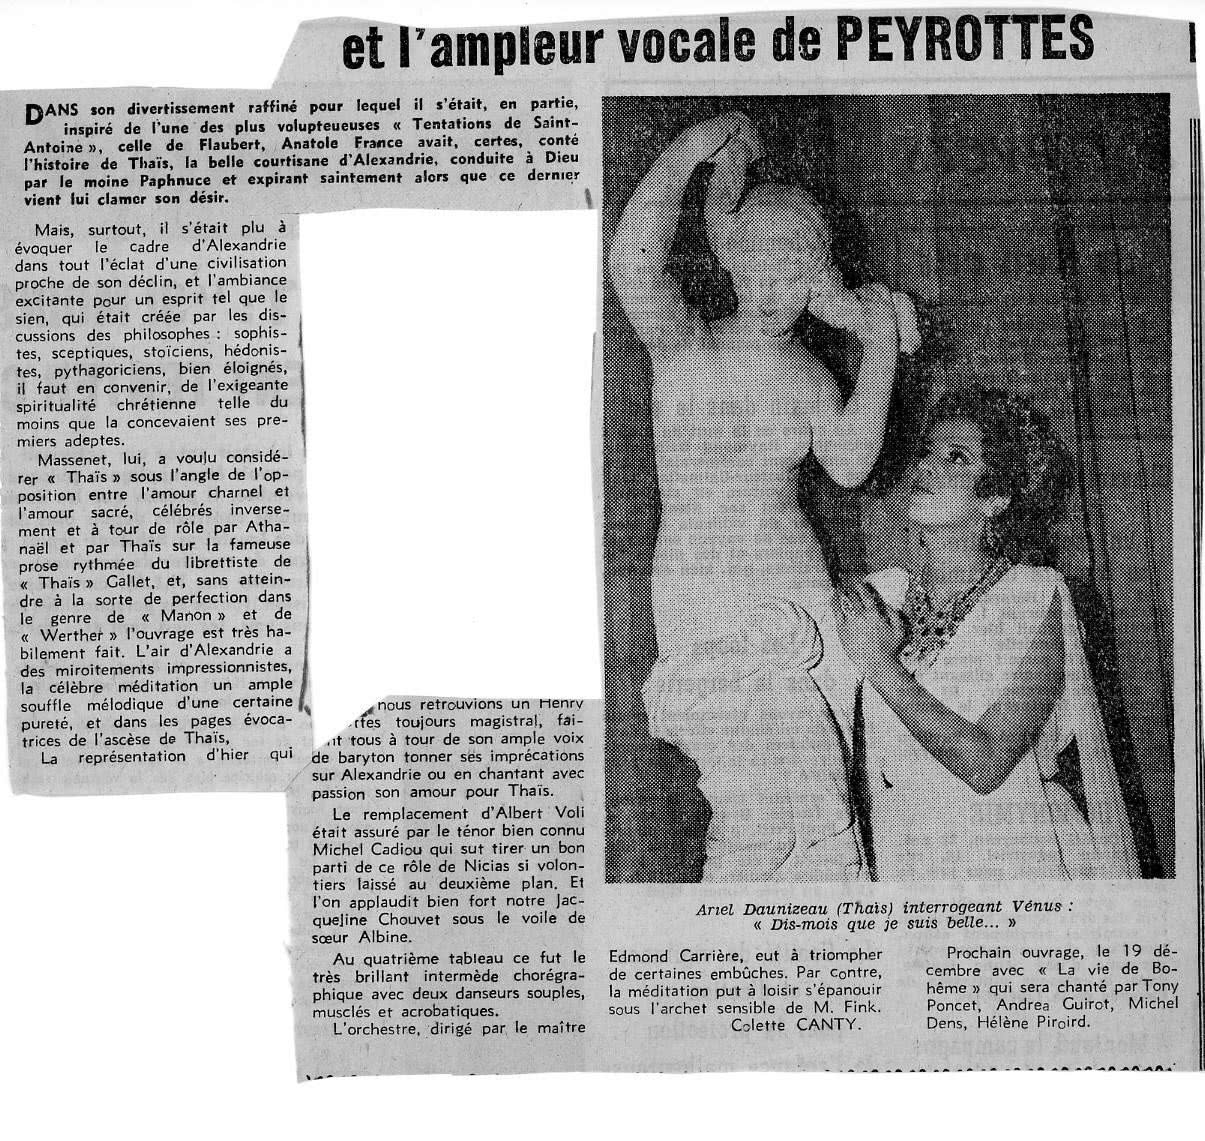 Ariel Daunizeau Thaïs La vie stéphanoise 6 decembre 1966